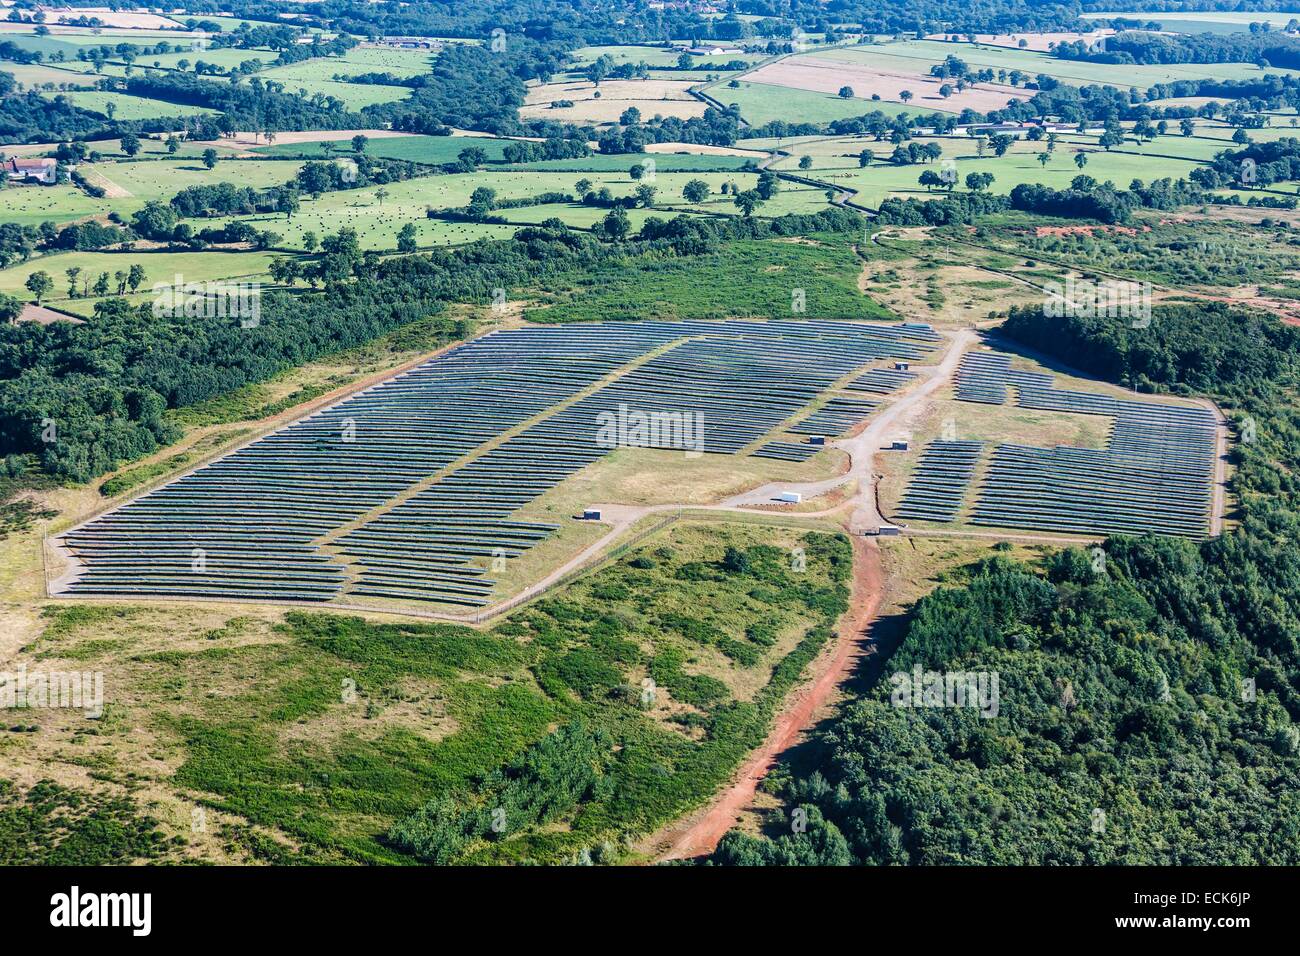 France, Indre, Chaillac, solar power plant (vue aérienne) Banque D'Images